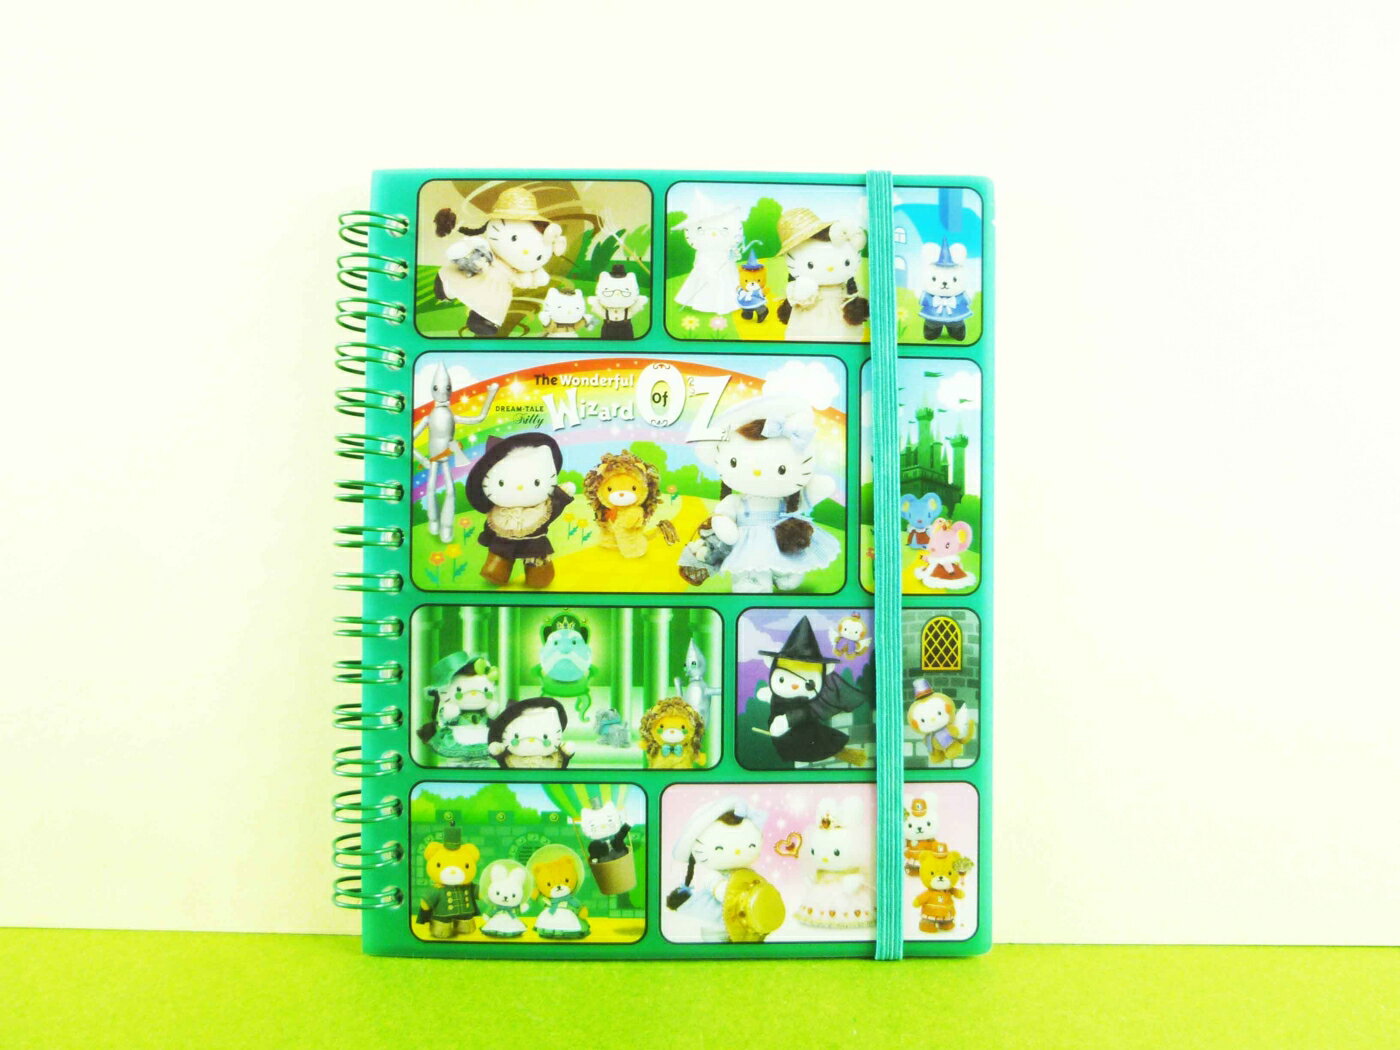 【震撼精品百貨】Hello Kitty 凱蒂貓 3*5相本 童話圖案-綠色【共1款】 震撼日式精品百貨